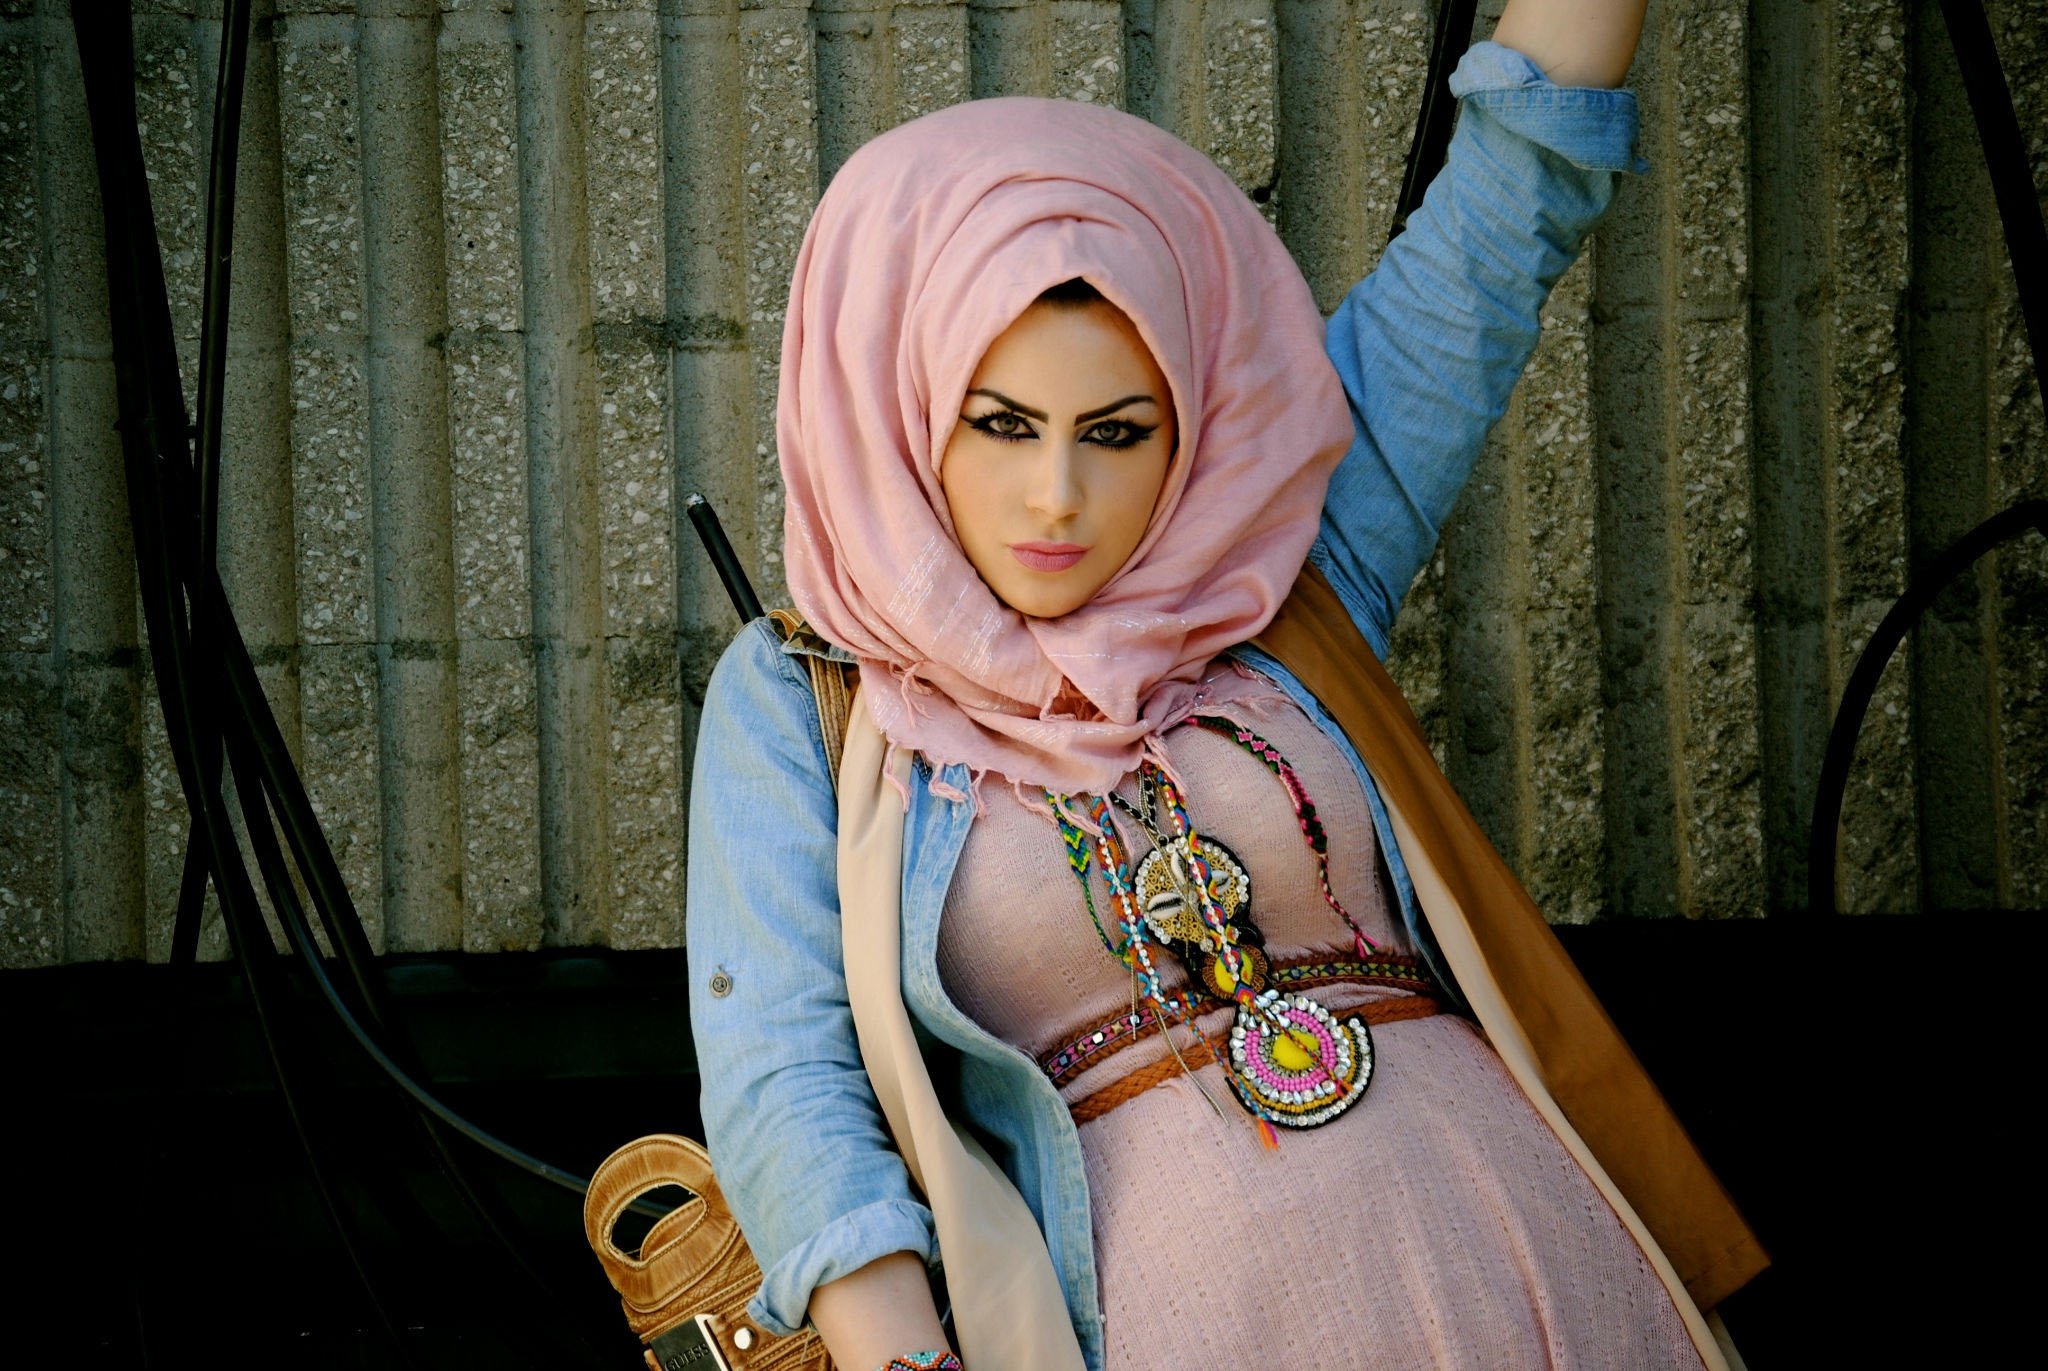 Сиськи арабской девушки невелики но очень привлекательны